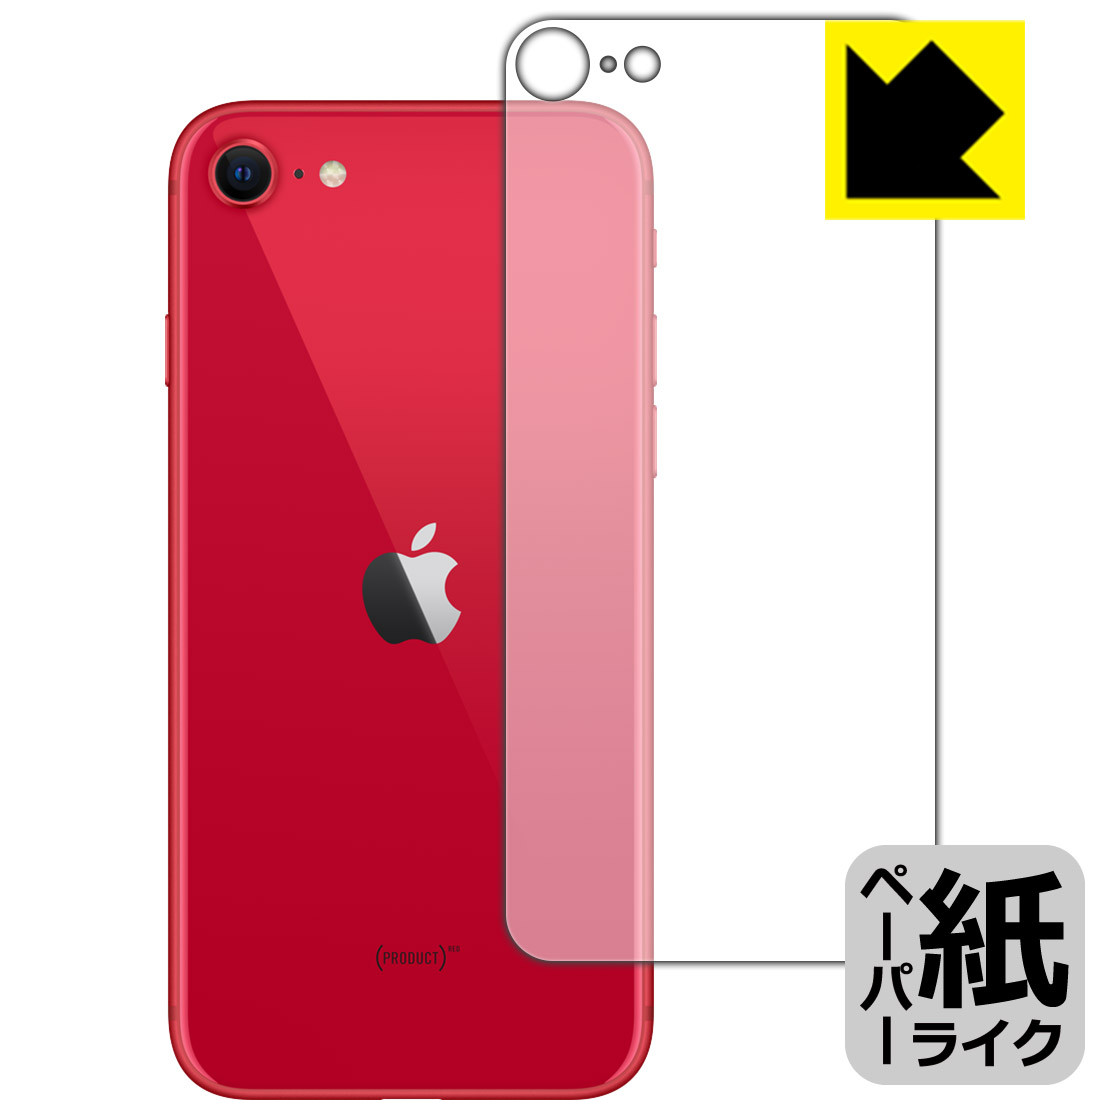 ペーパーライク保護フィルム iPhone SE (第2世代) 背面のみ 【O型】 日本製 自社製造直販